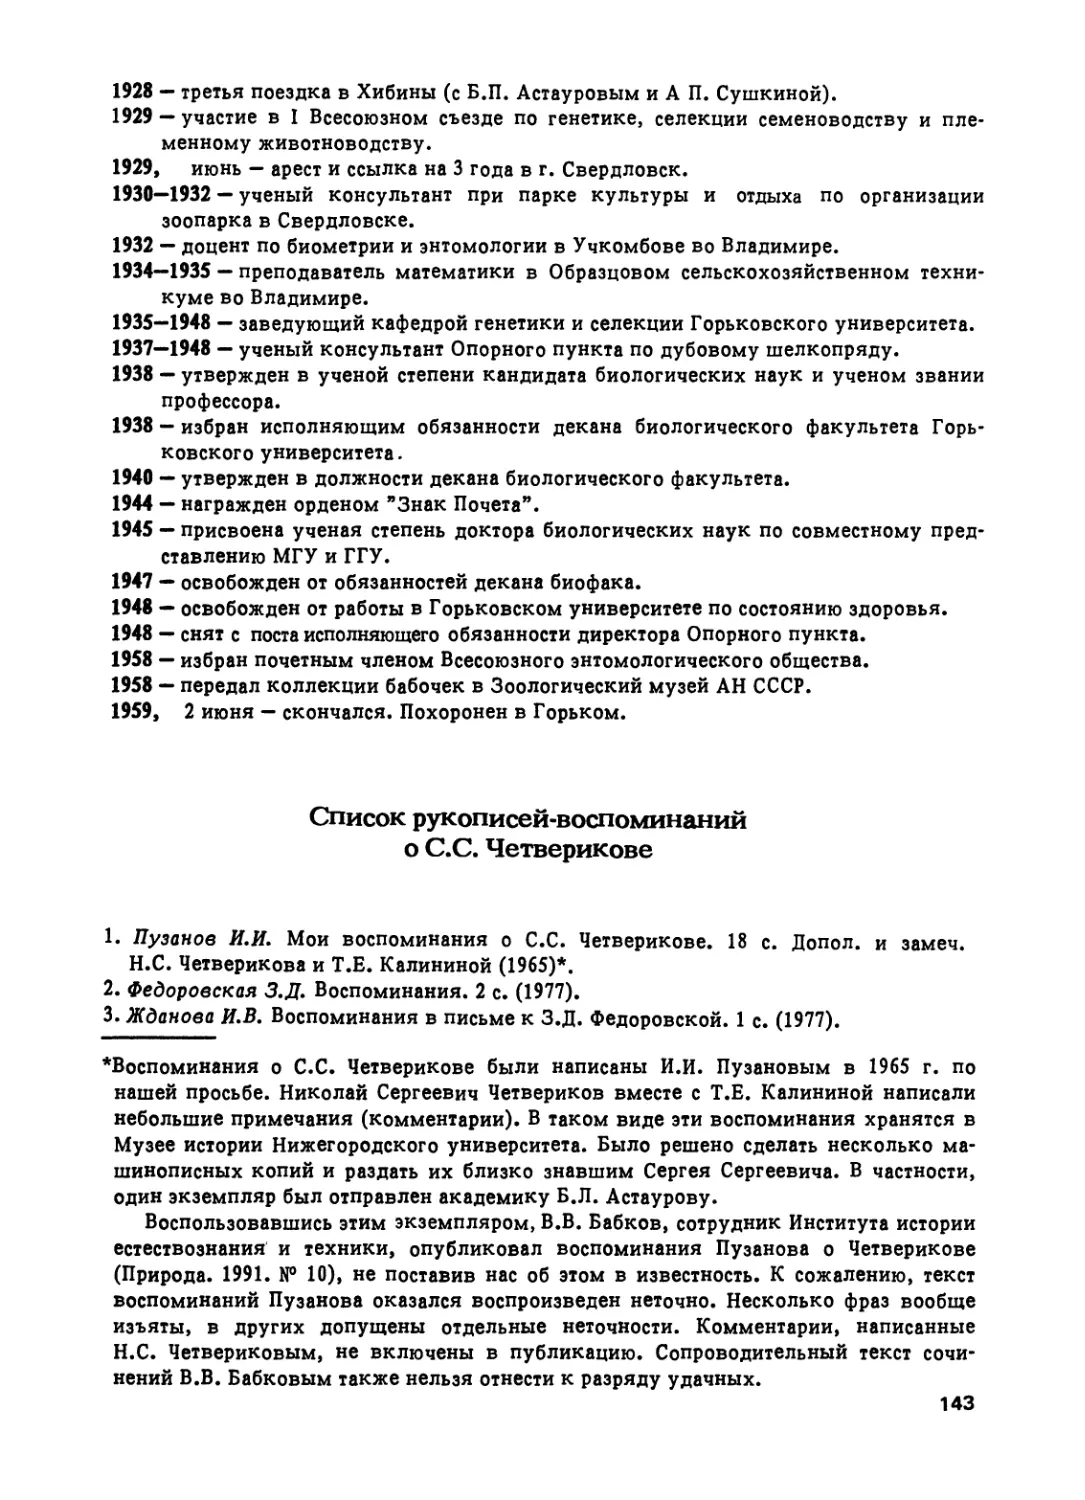 Список рукописей-воспоминаний о С.С. Четверикове